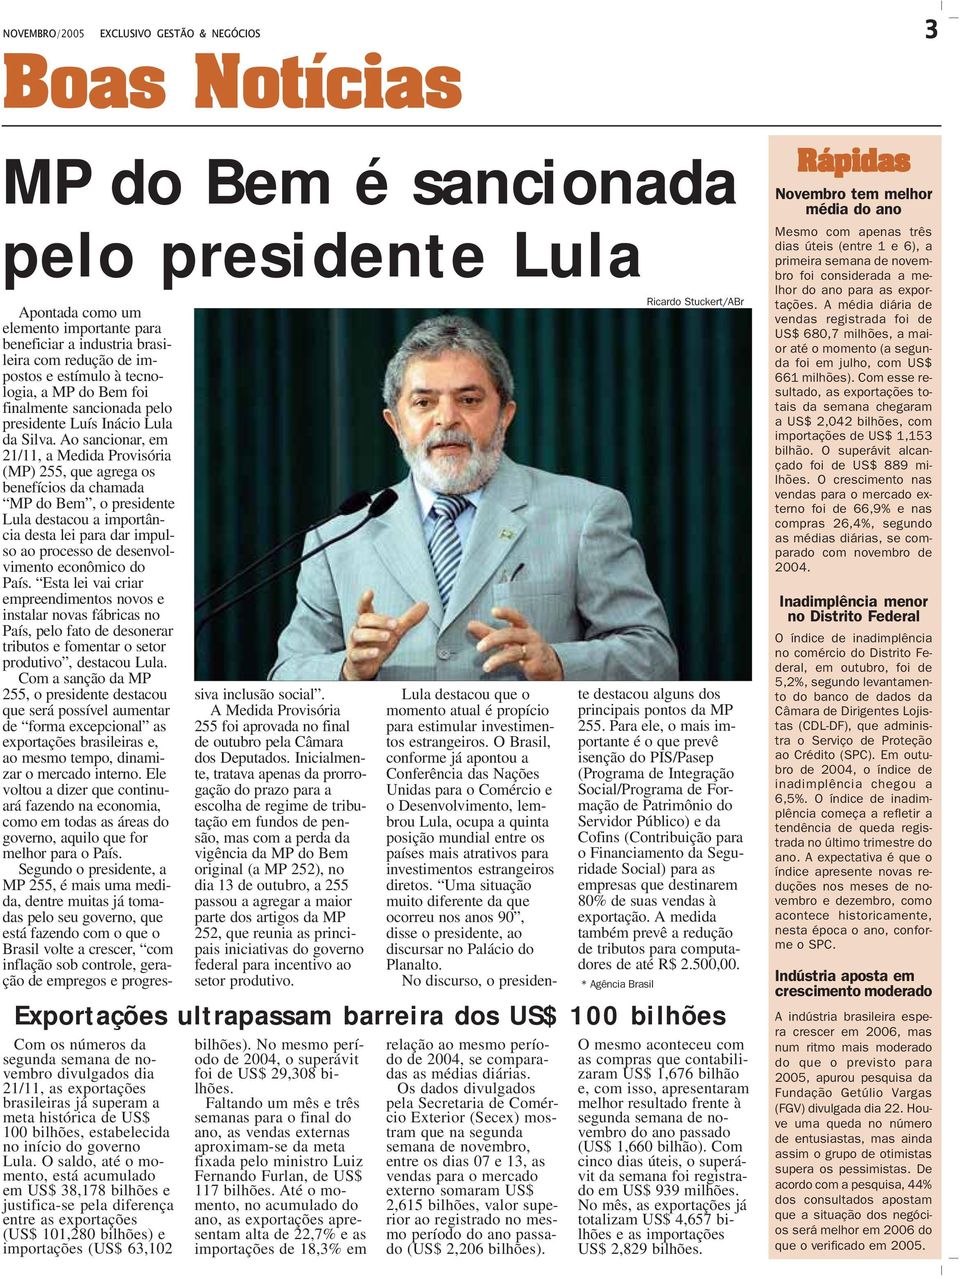 Ao sancionar, em 21/11, a Medida Provisória (MP) 255, que agrega os benefícios da chamada MP do Bem, o presidente Lula destacou a importância desta lei para dar impulso ao processo de desenvolvimento